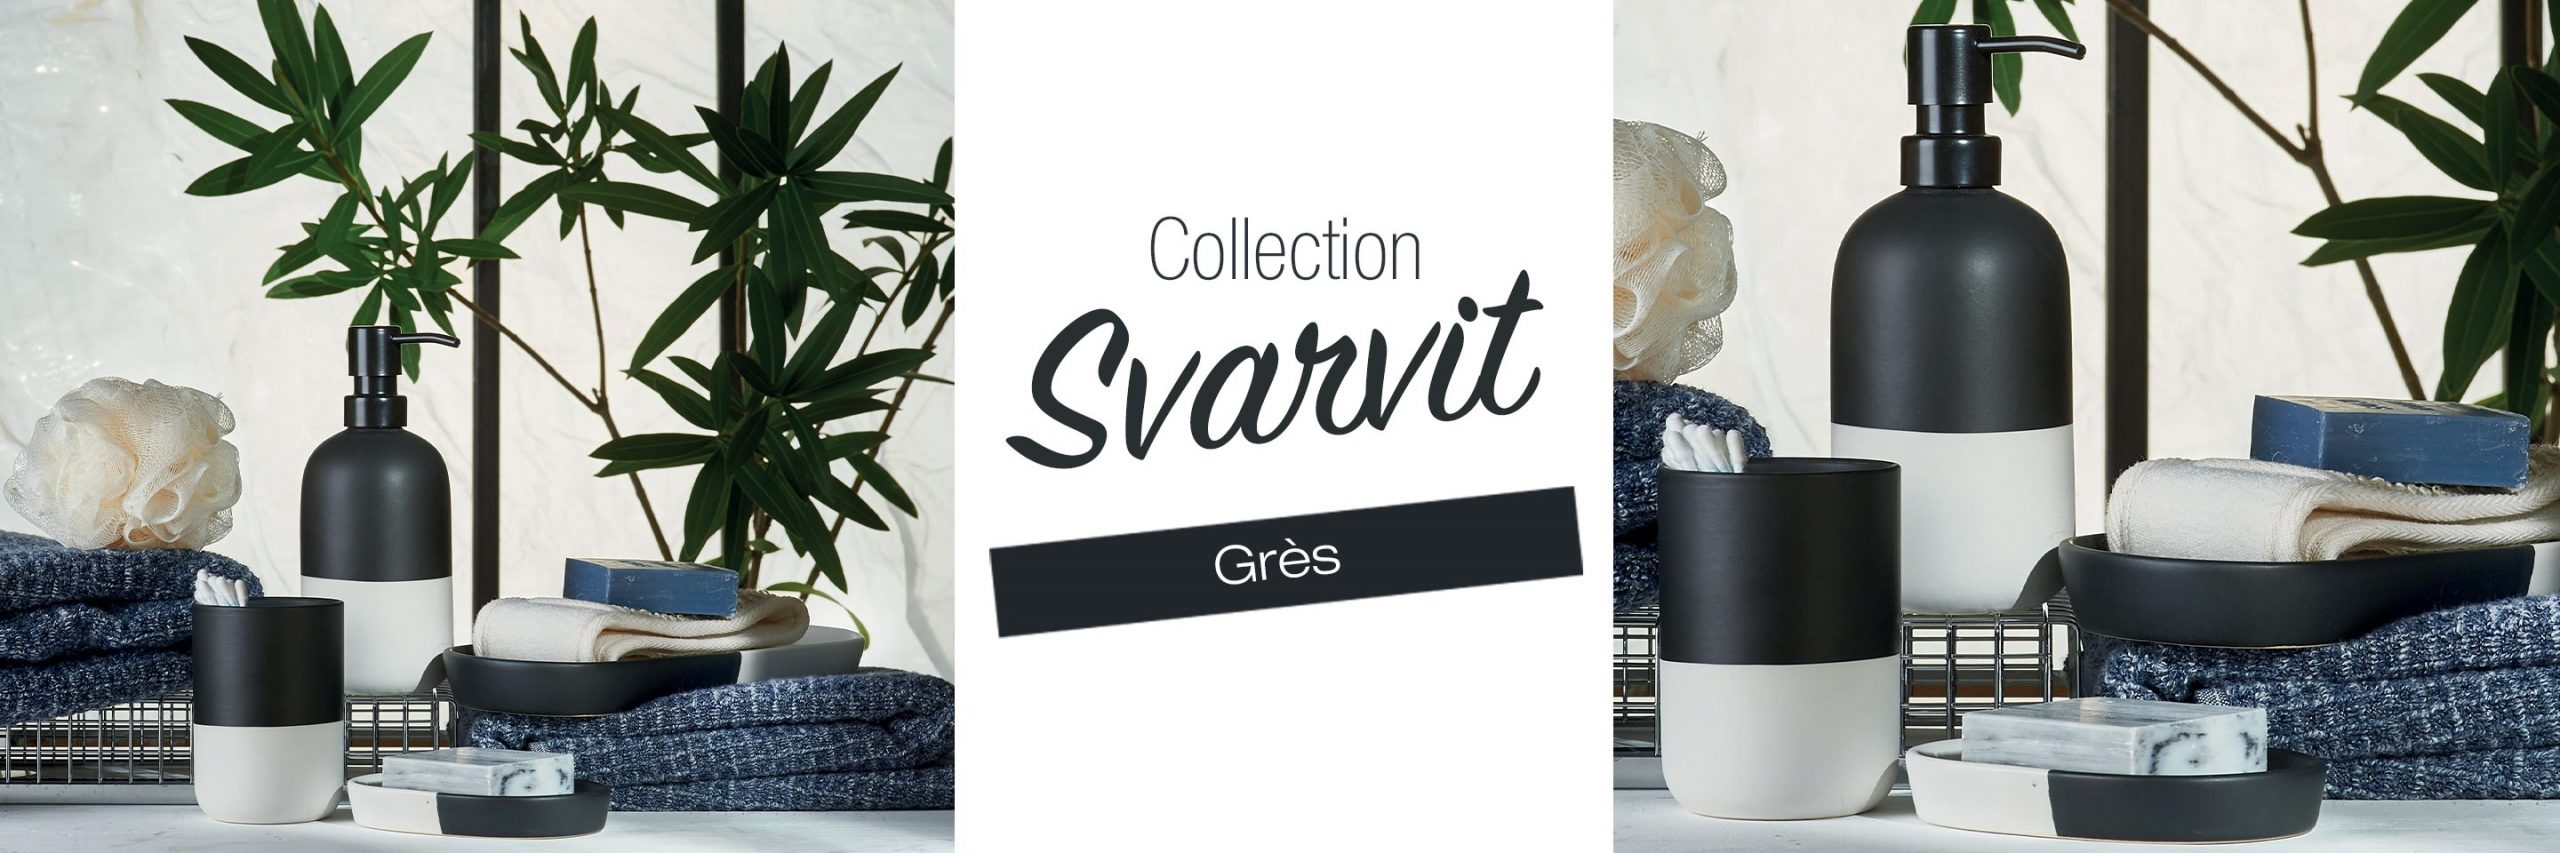 Collection SVARVIT grès noir et blanc